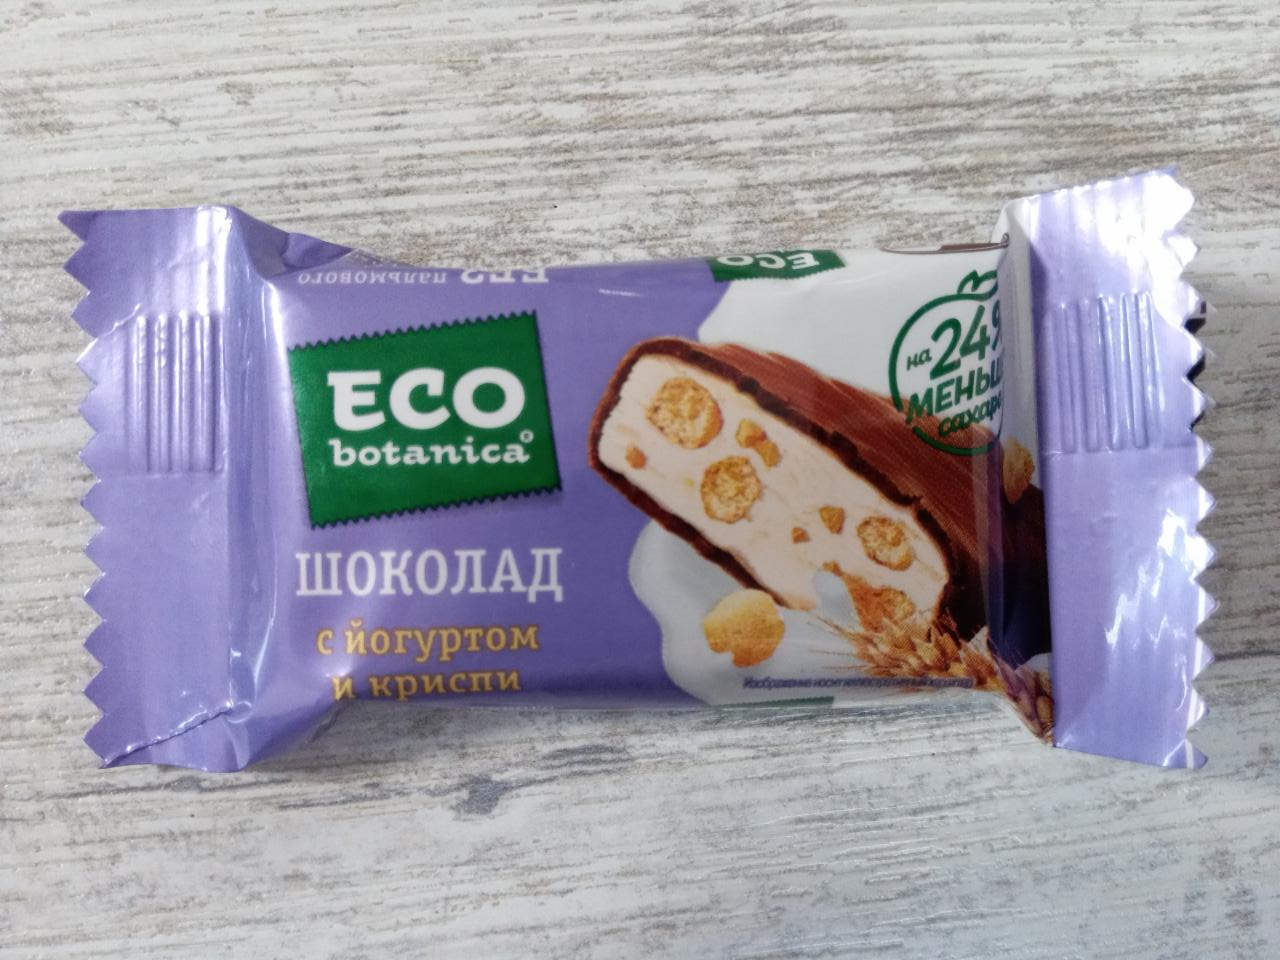 Фото - шоколад с йогуртом и криспи Eco botanica